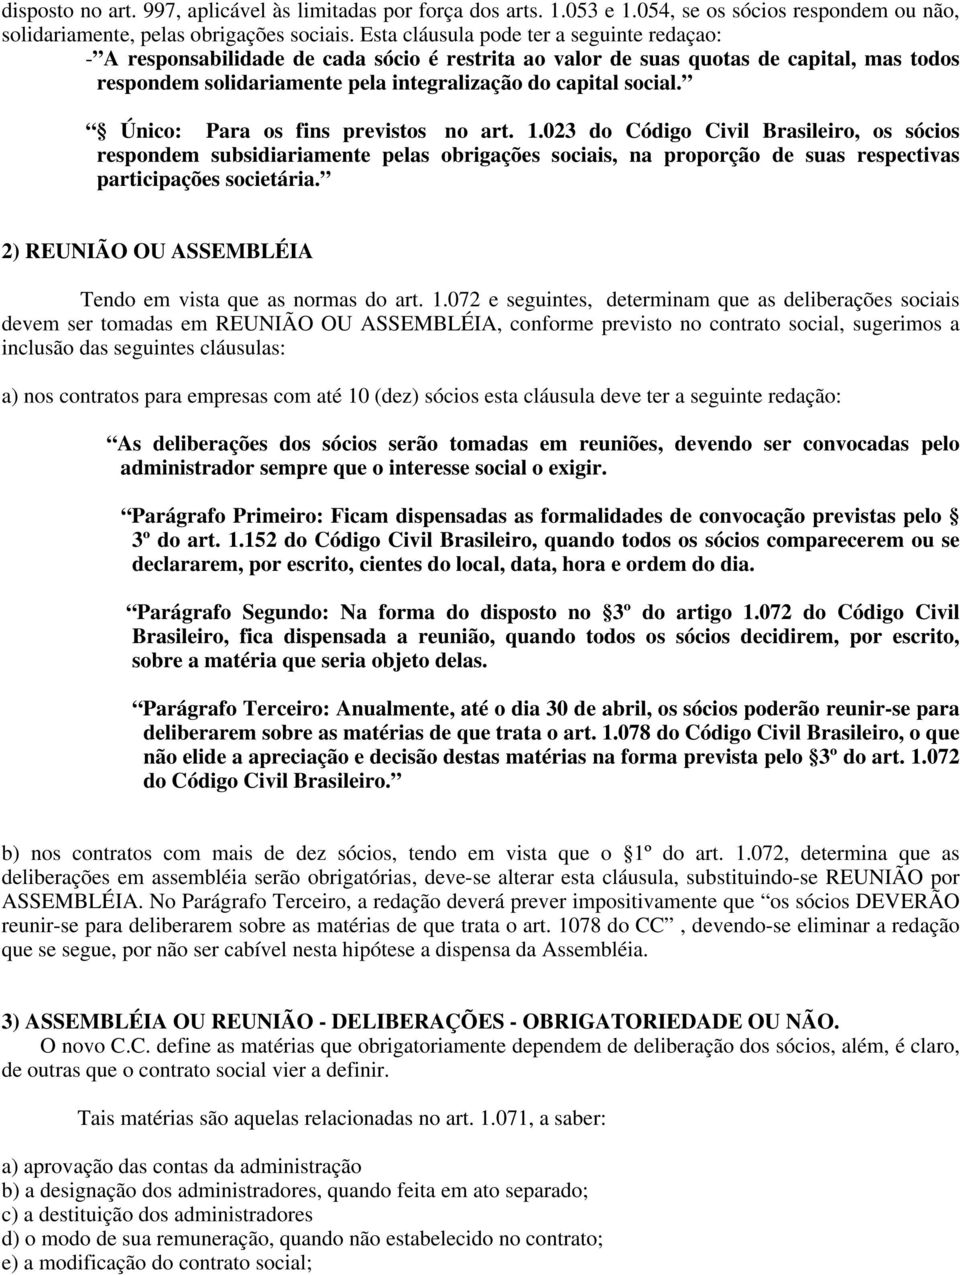 Único: Para os fins previstos no art. 1.023 do Código Civil Brasileiro, os sócios respondem subsidiariamente pelas obrigações sociais, na proporção de suas respectivas participações societária.